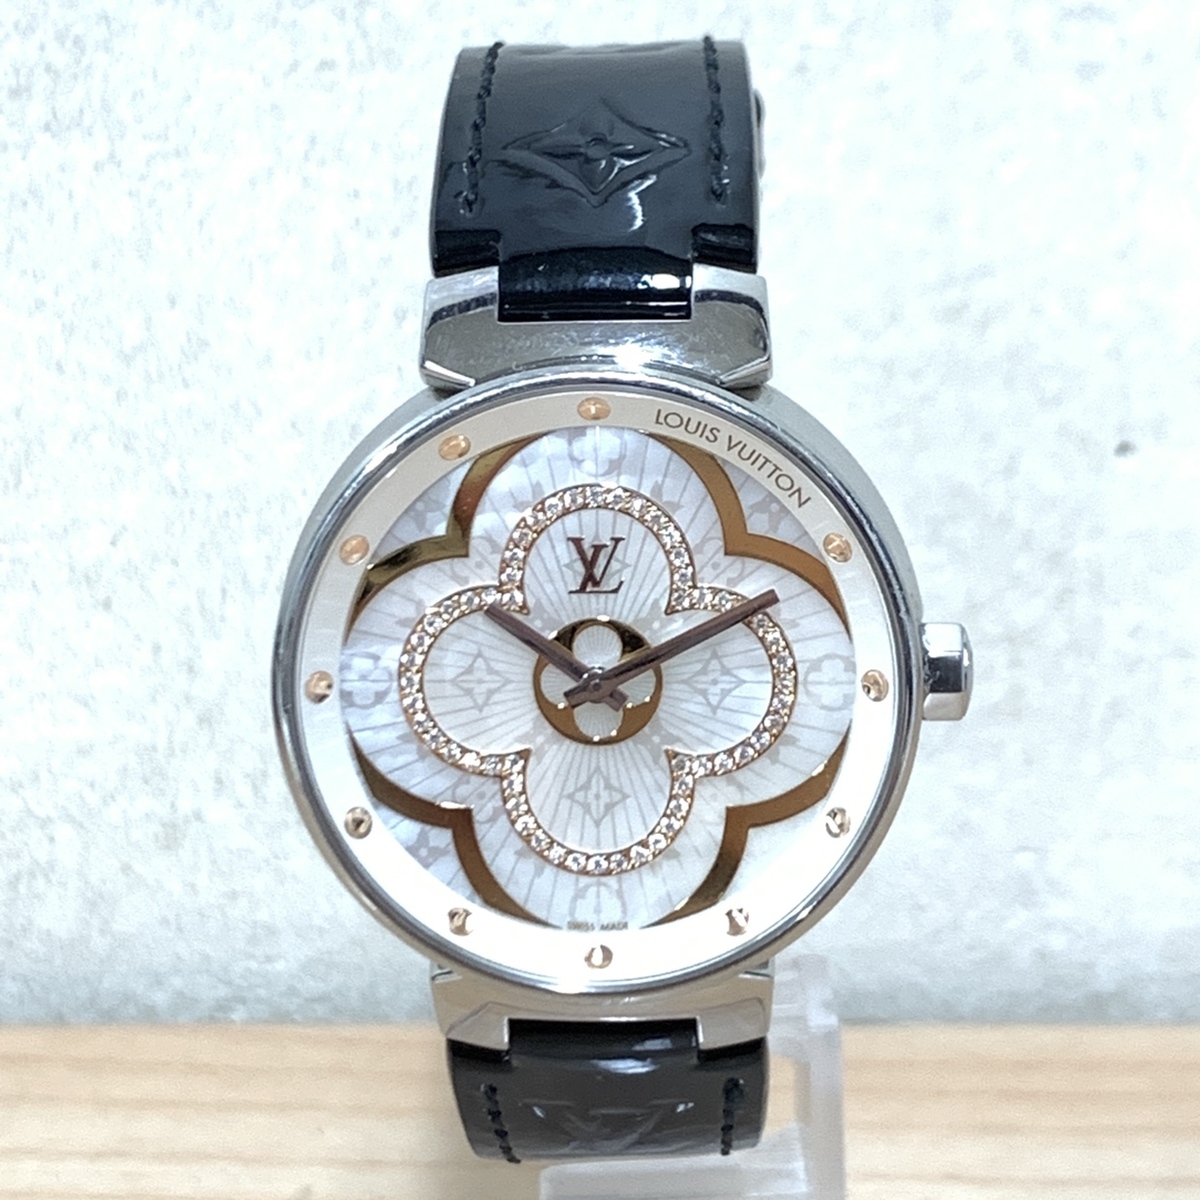 ルイヴィトンのQA019 タンブール ムーンディヴァイン クォーツ時計の買取実績です。